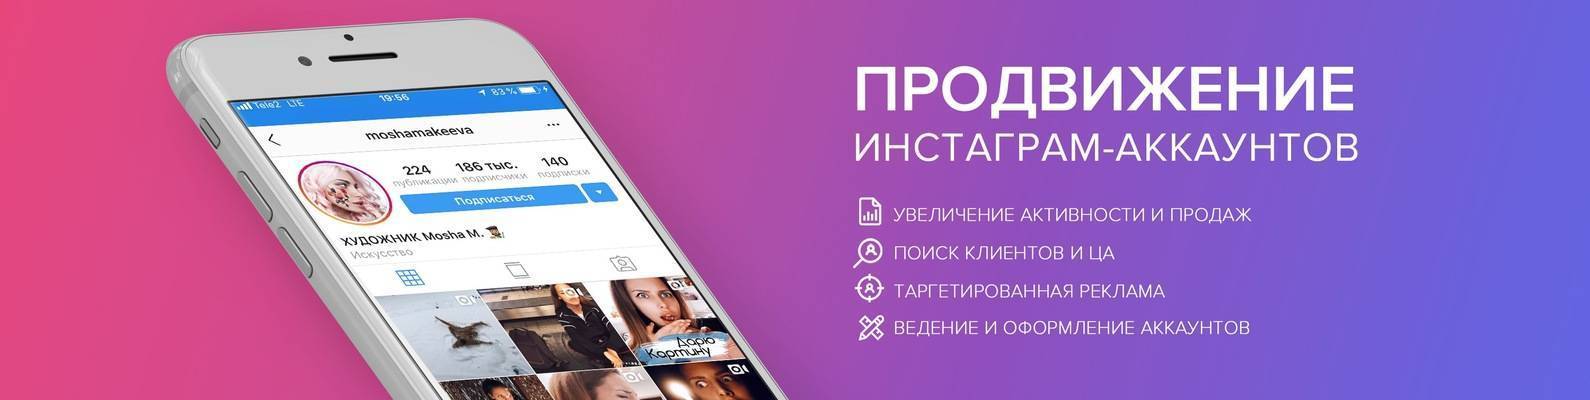 Как раскрутить "инстаграм". советы по продвижению в instagram :: businessman.ru